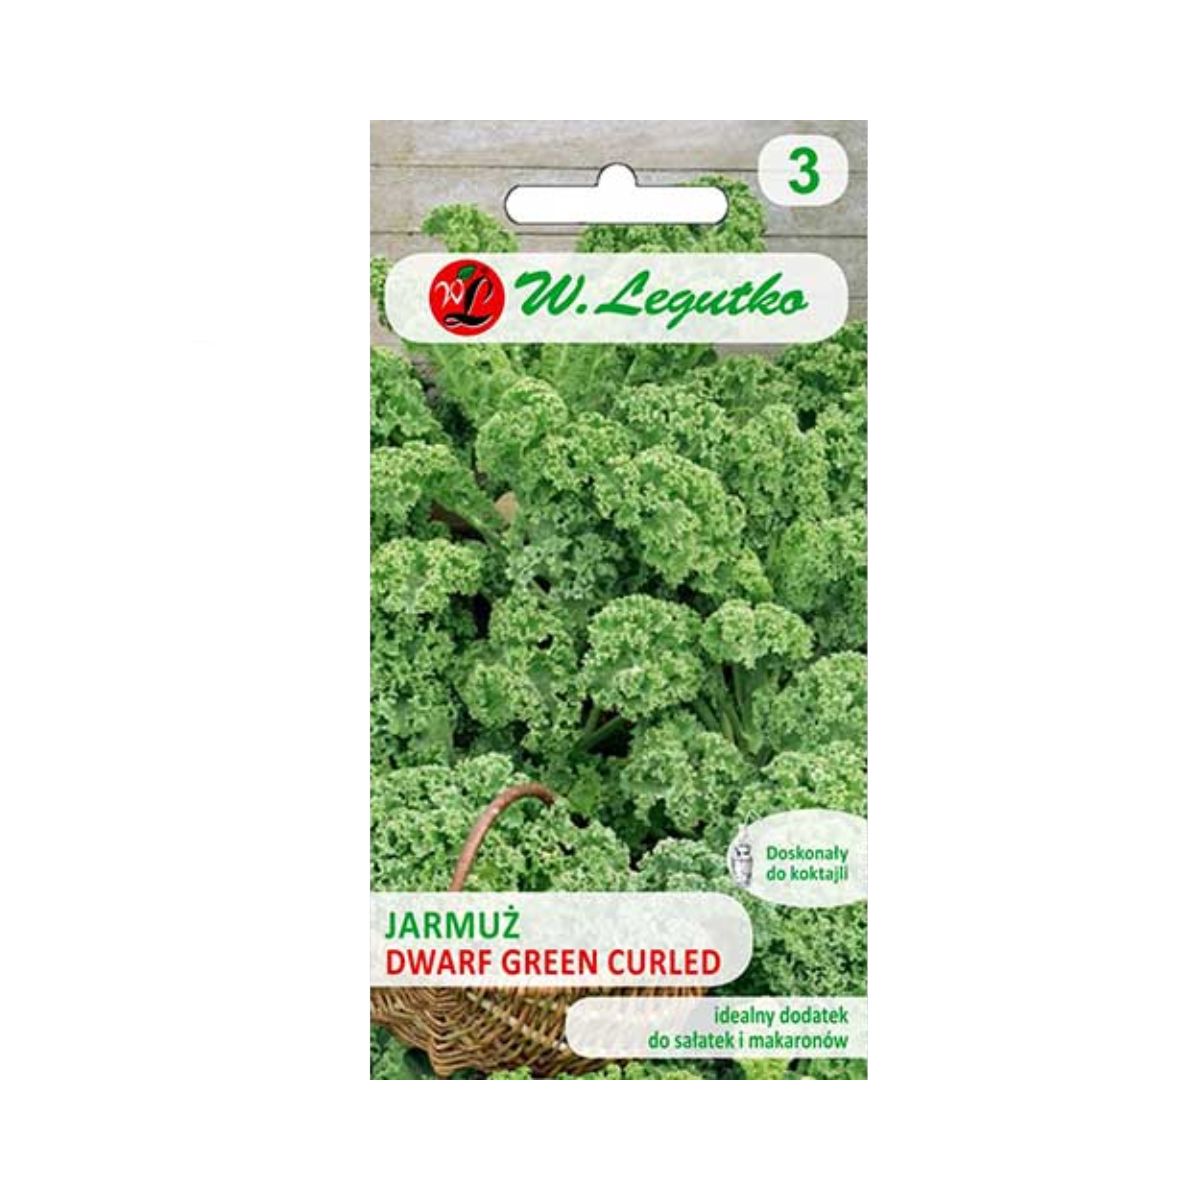 Varza - Seminte de varza Kale pitica, 1 gr, LEGUTKO, hectarul.ro